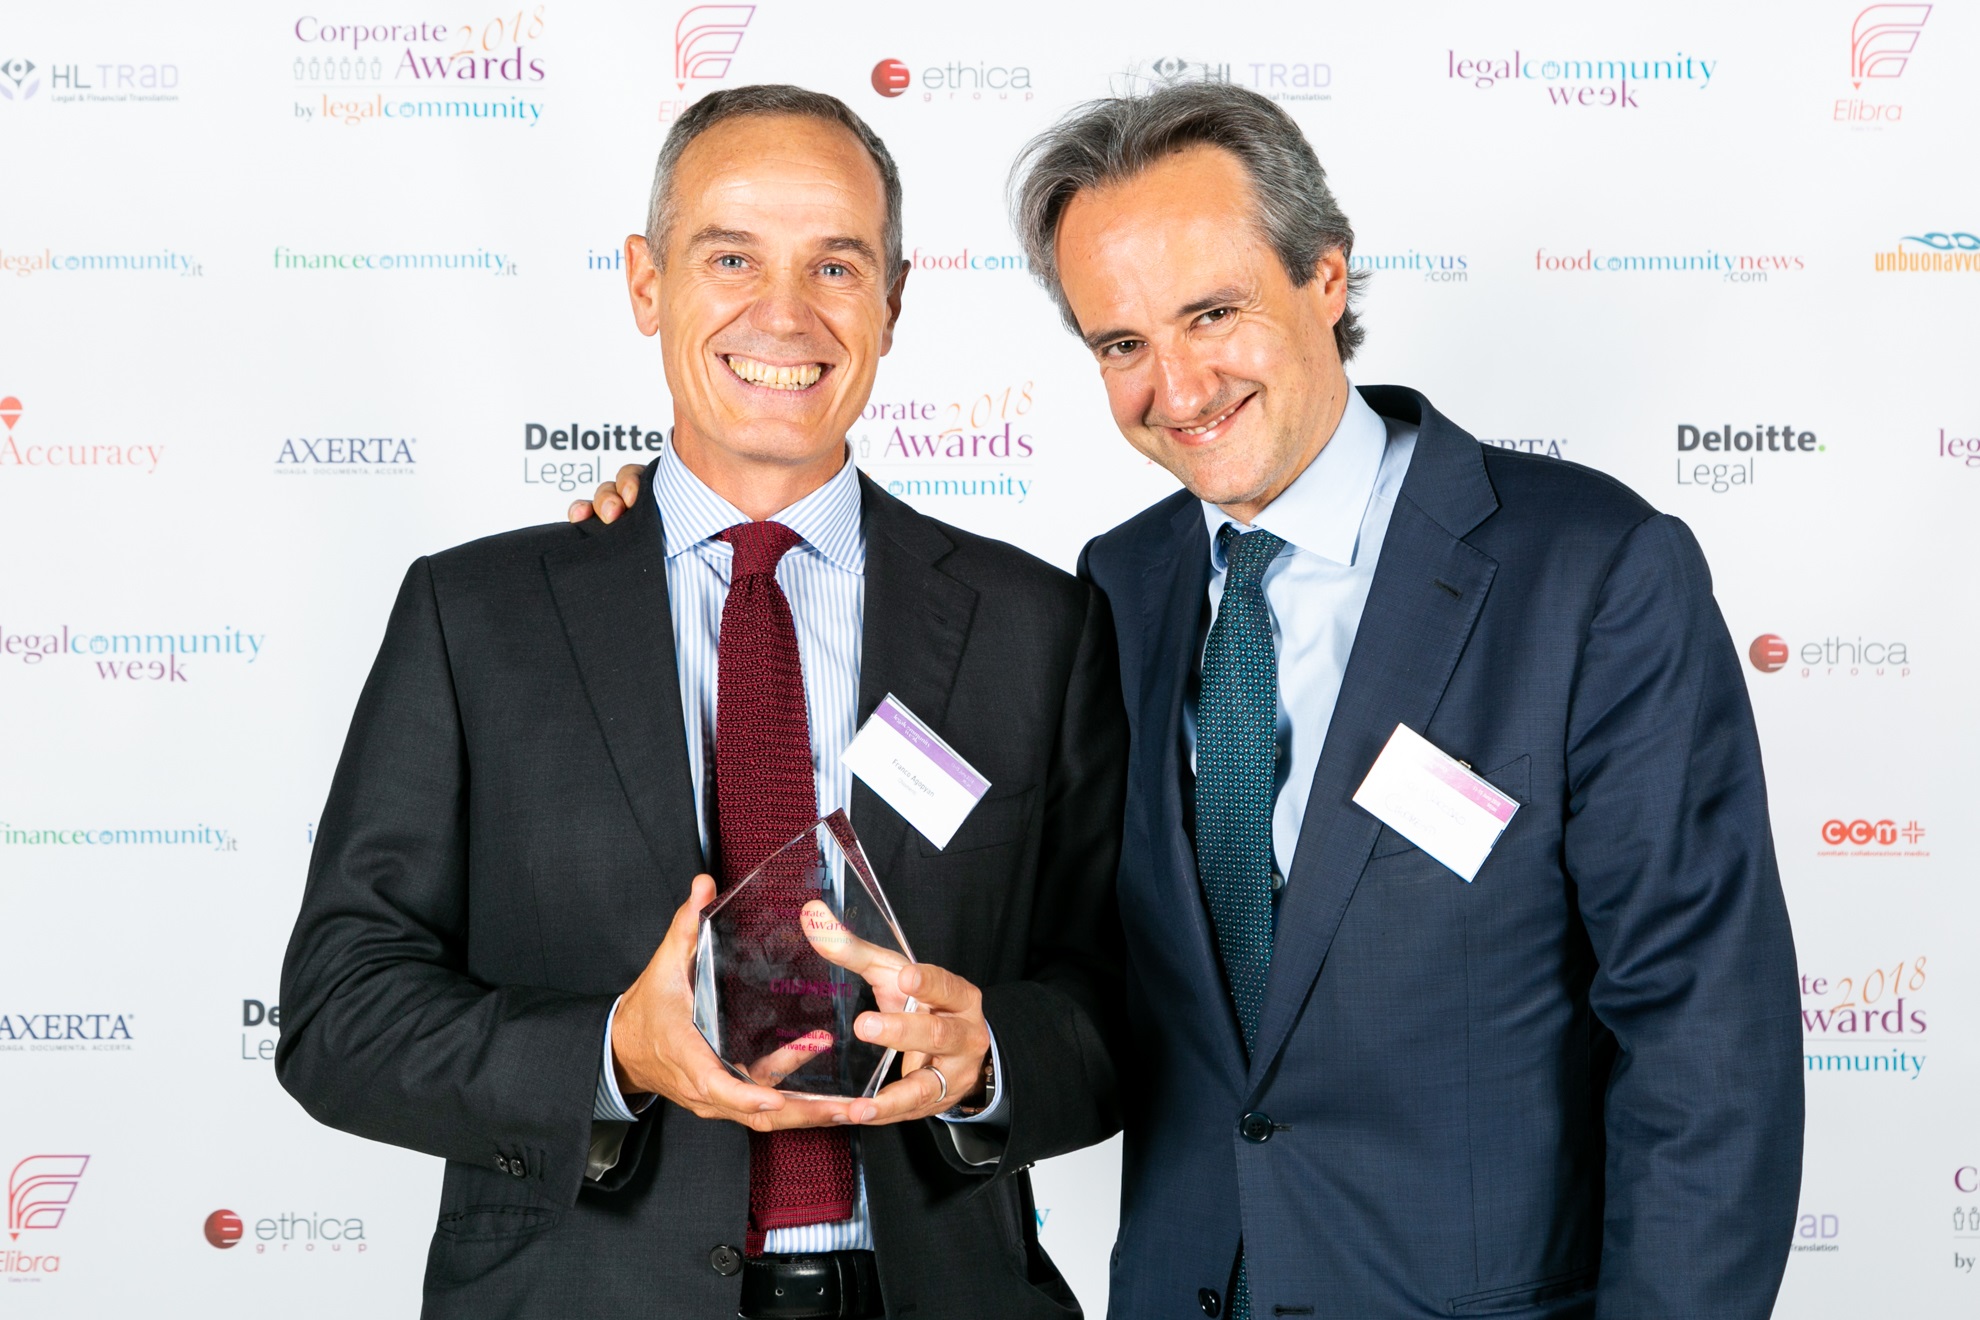 Legalcommunity Corporate Awards: Chiomenti premiato come “Studio dell’anno Private Equity 2018”